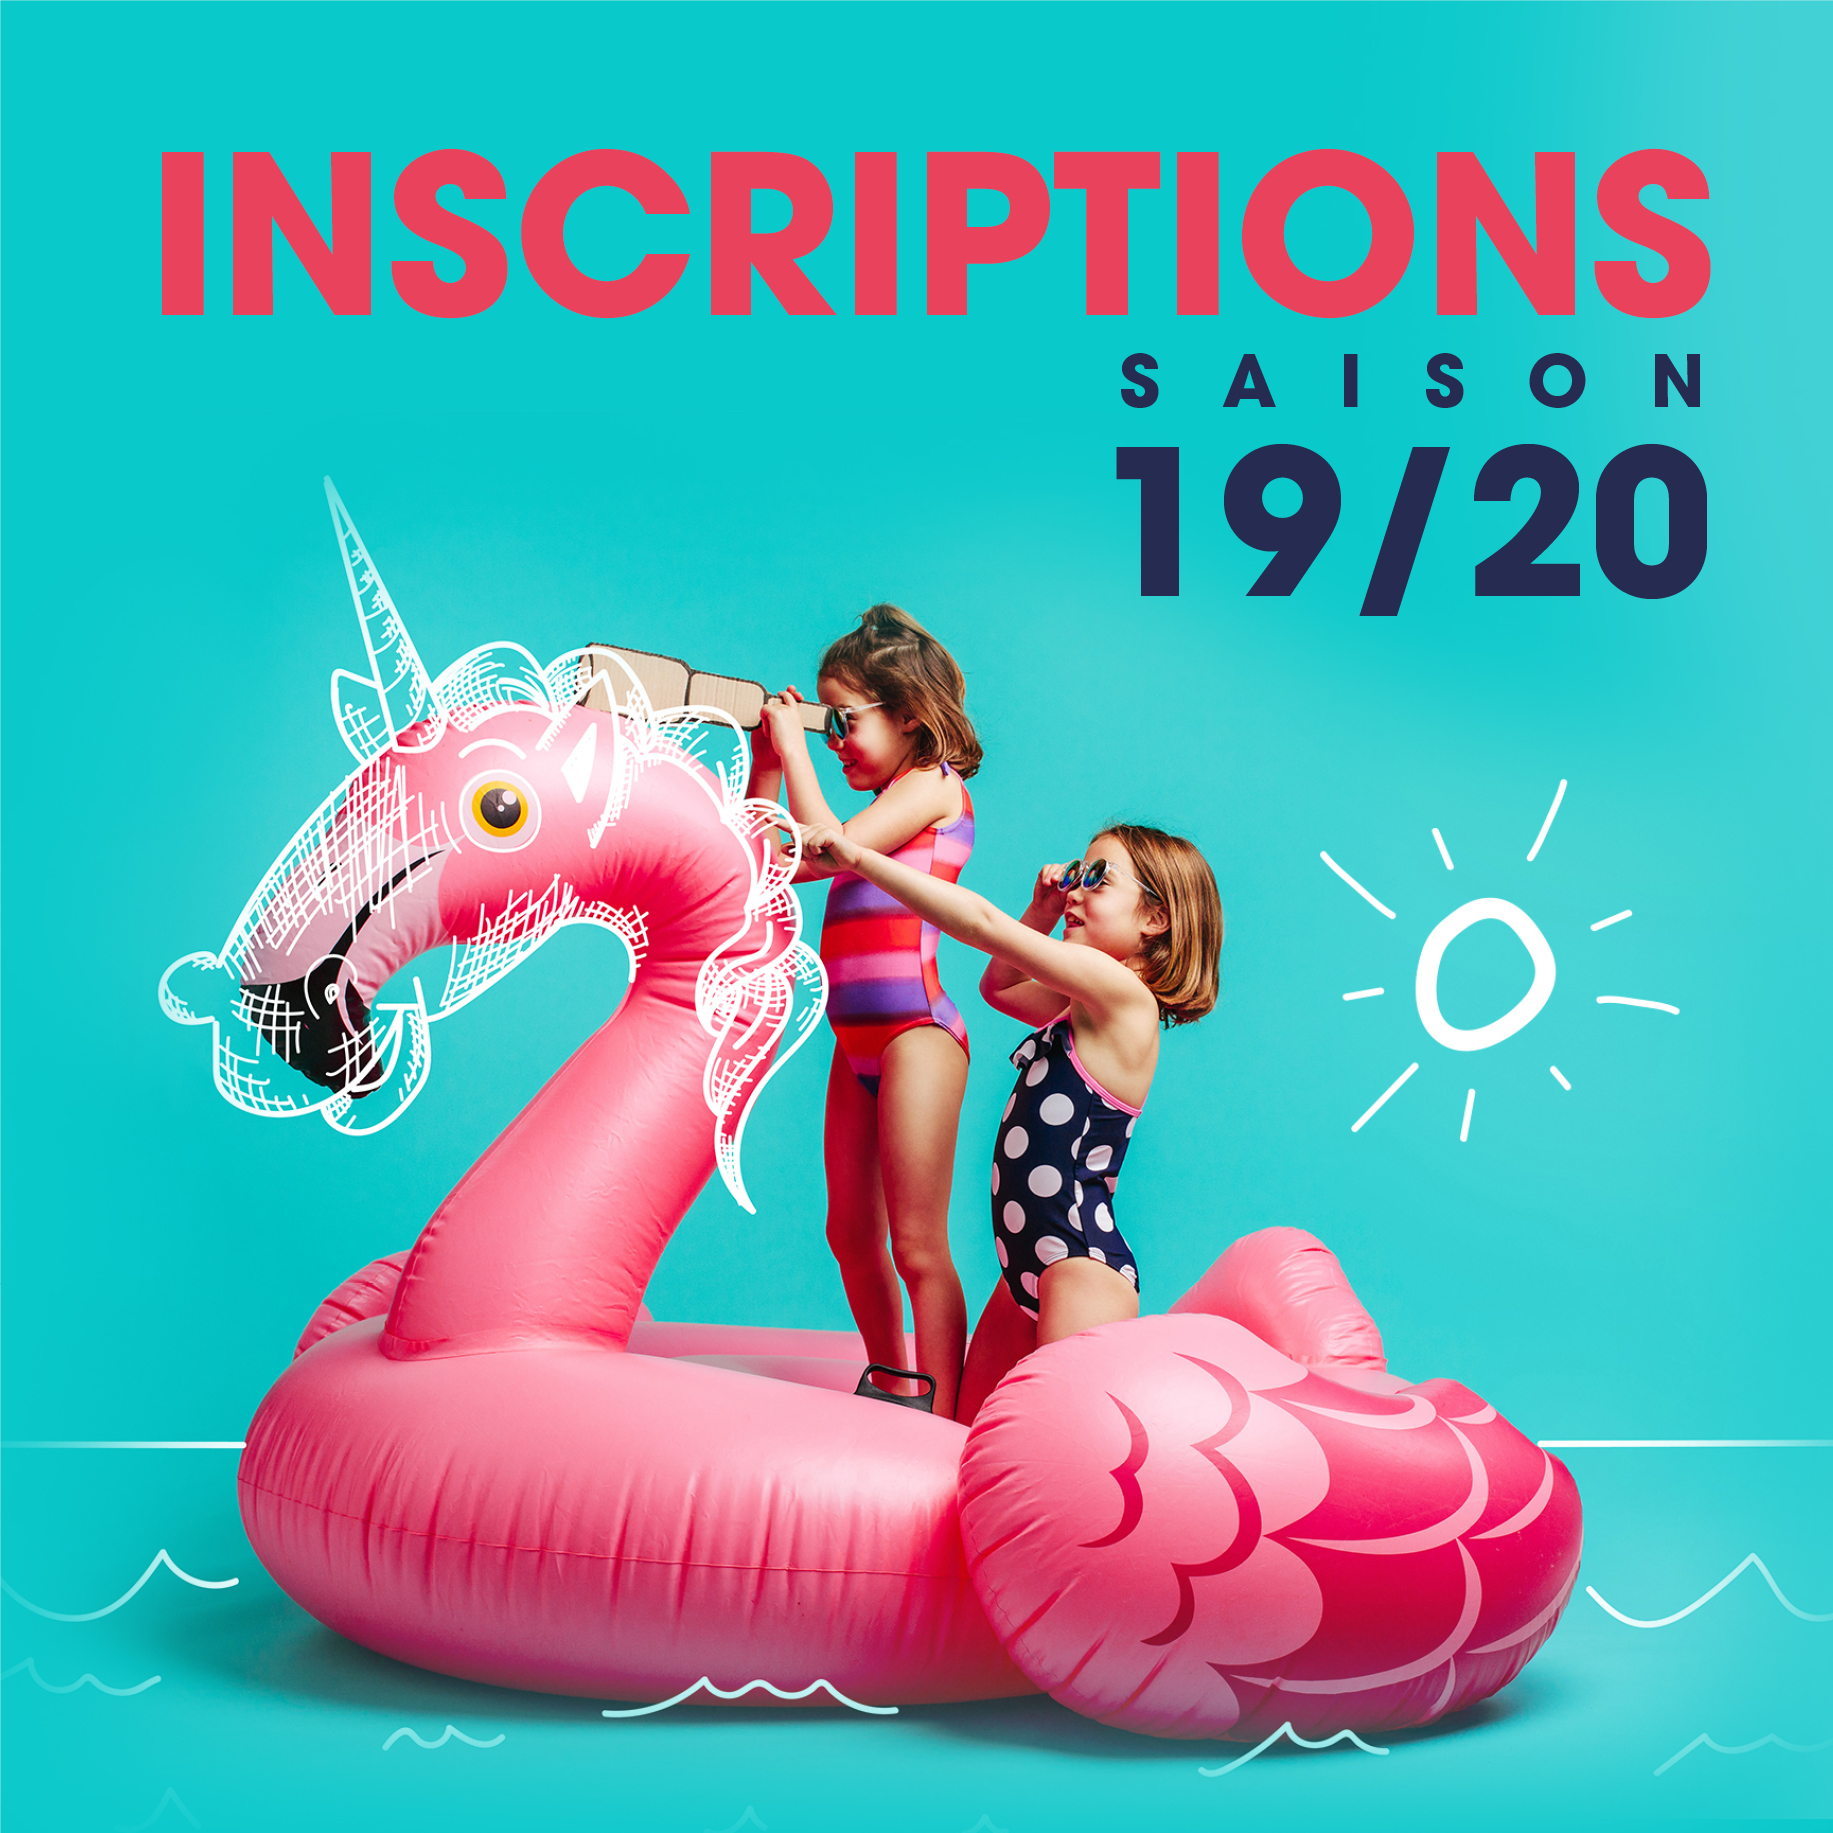 SAISON 2019-2020 – INSCRIPTIONS aux ateliers et aux stages